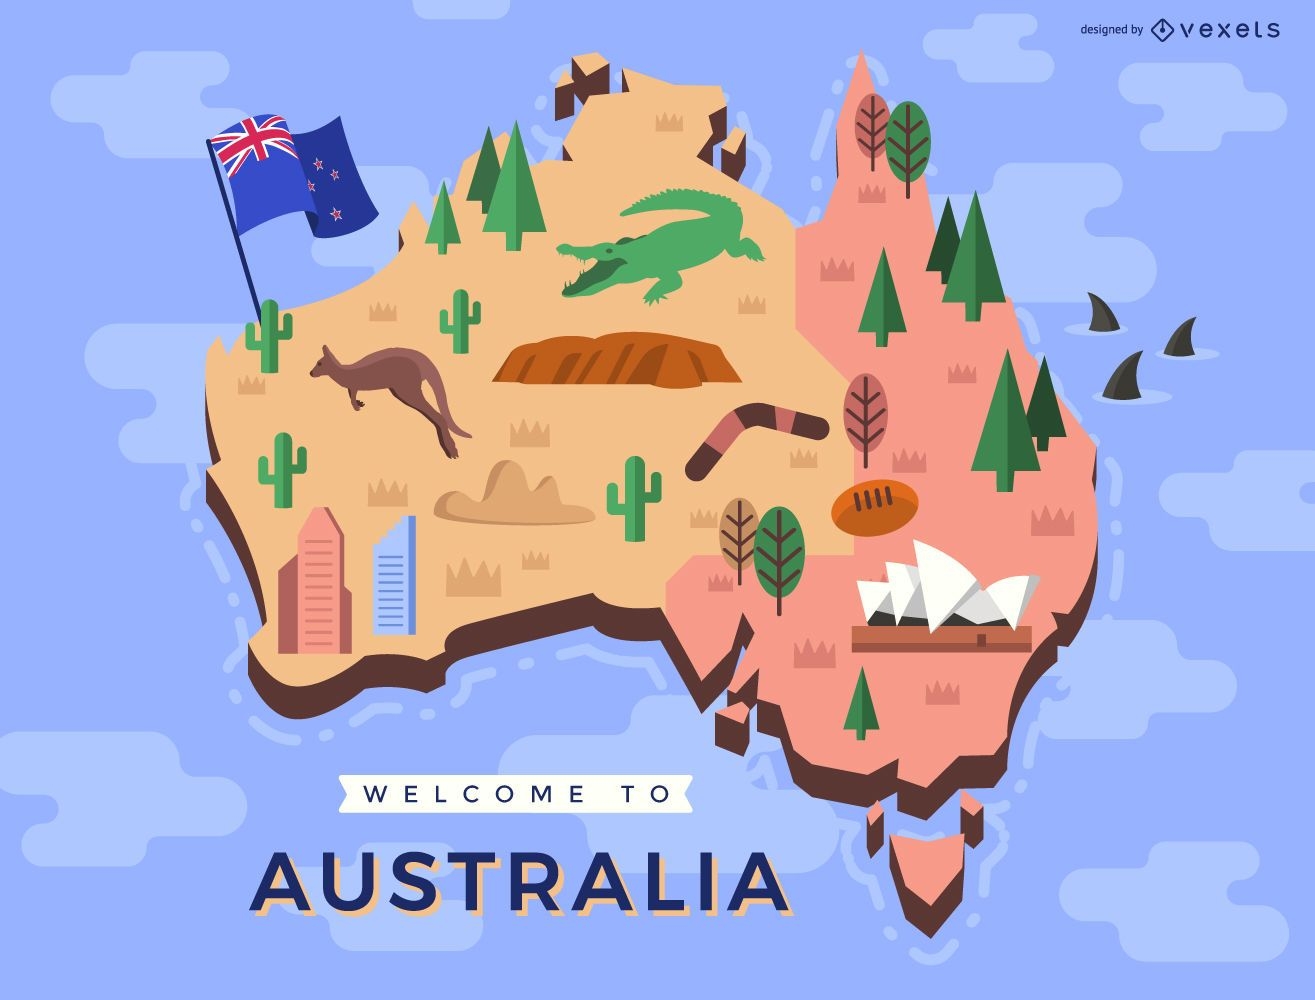 Mapa australiano con elementos tradicionales